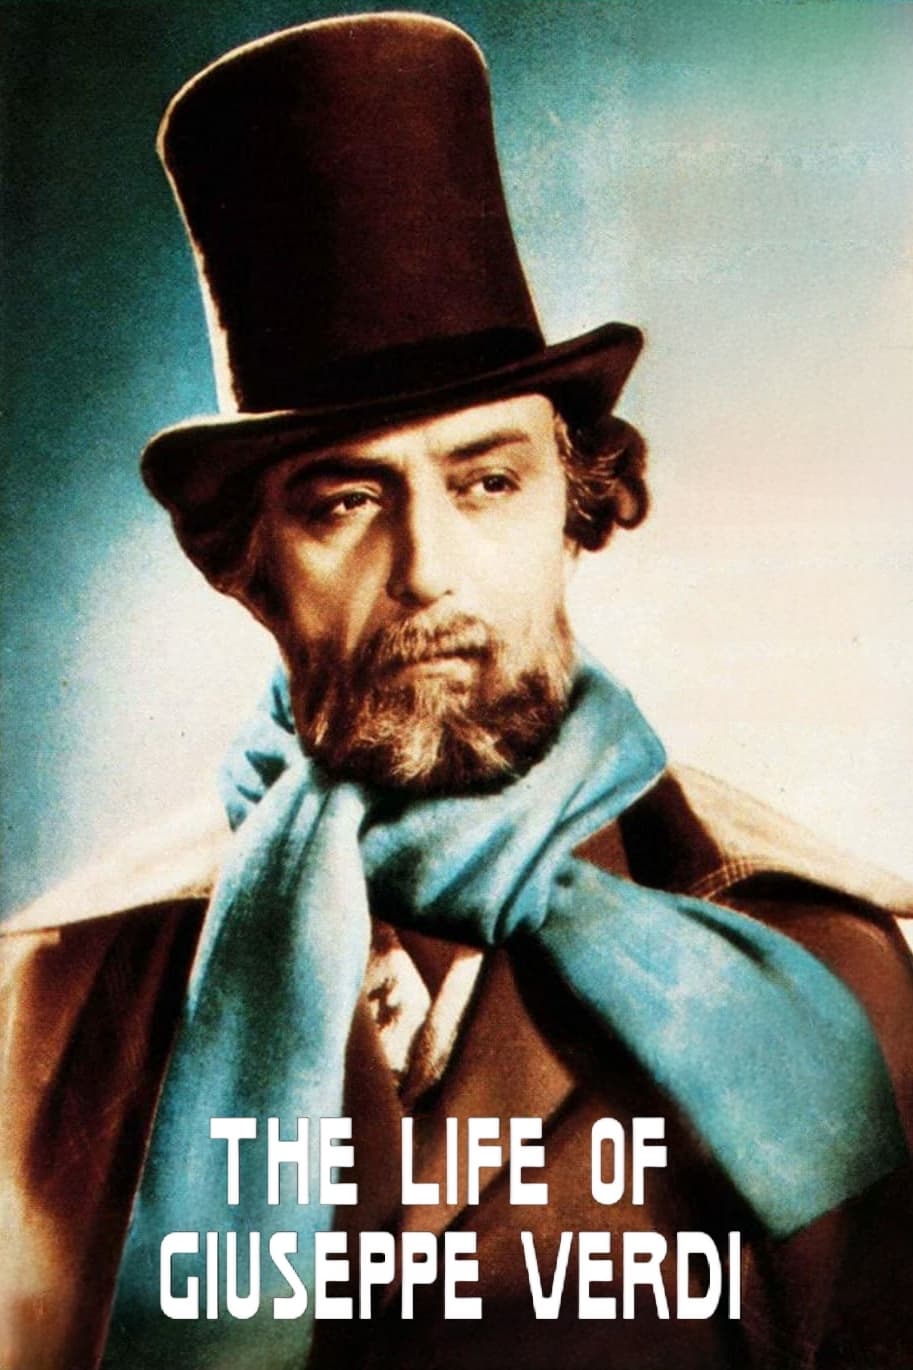 The Life of Giuseppe Verdi (1938)